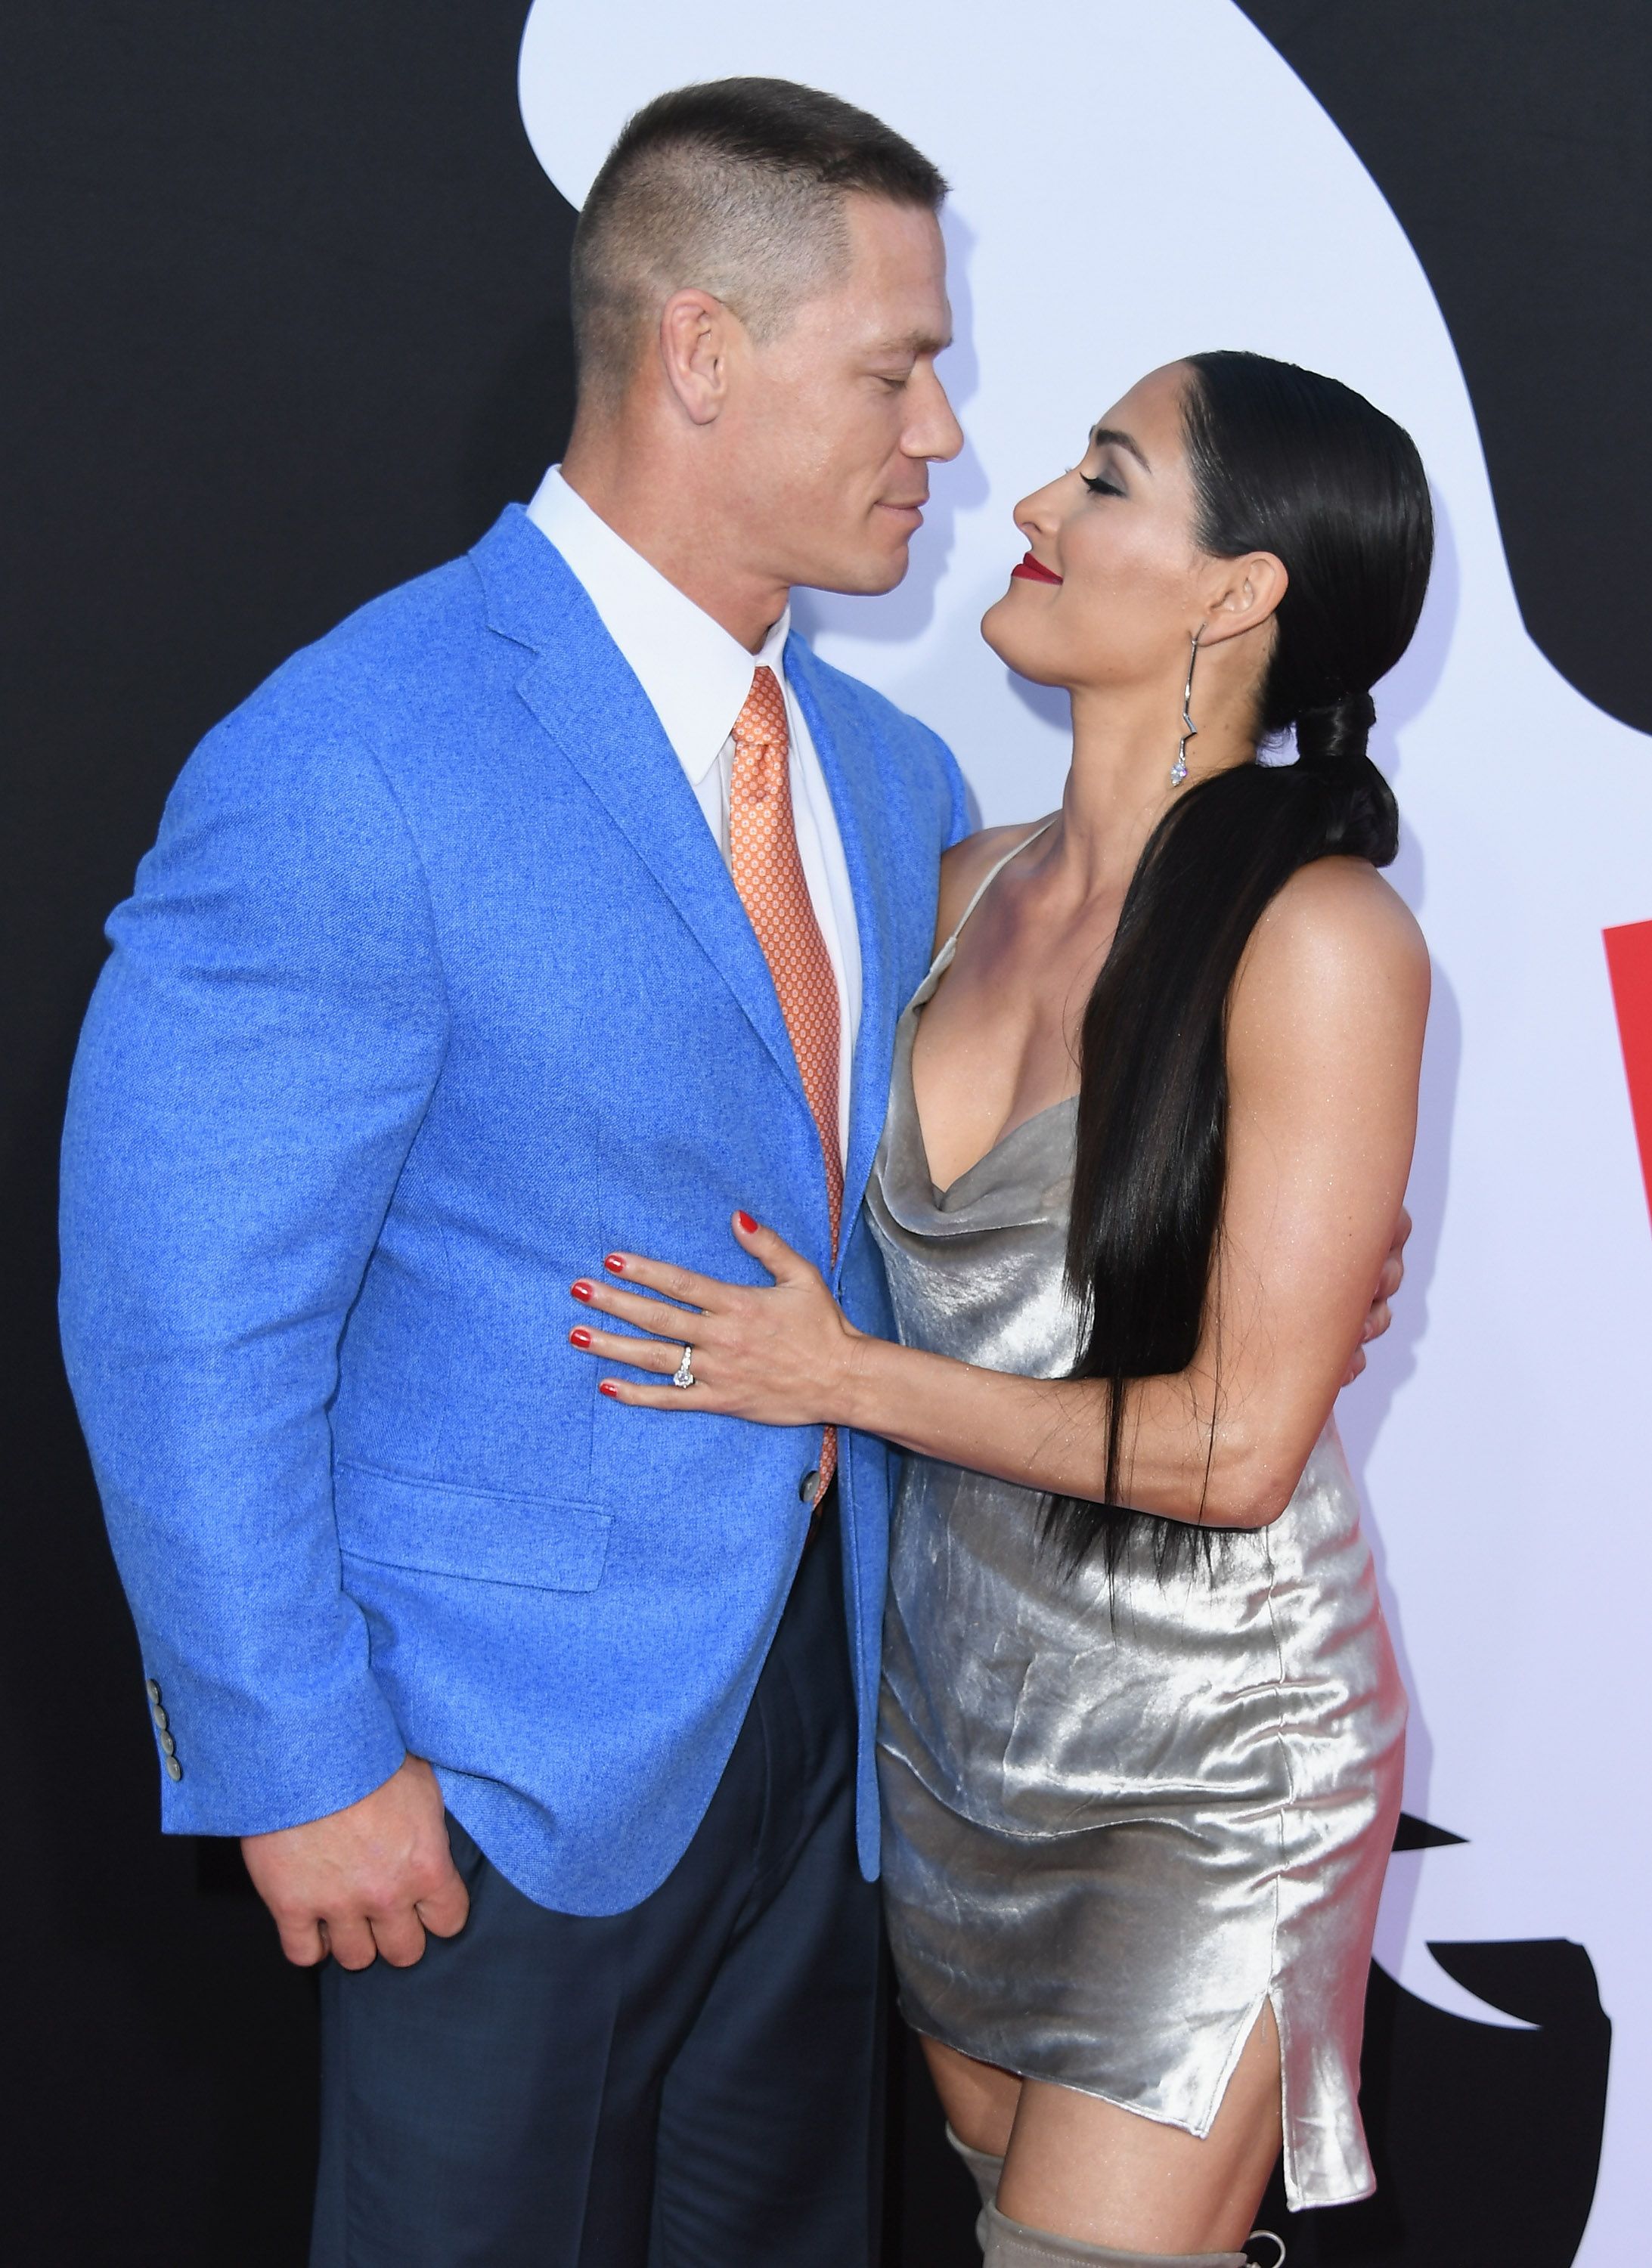 John Cena and Nikki Bella Relationship Timeline